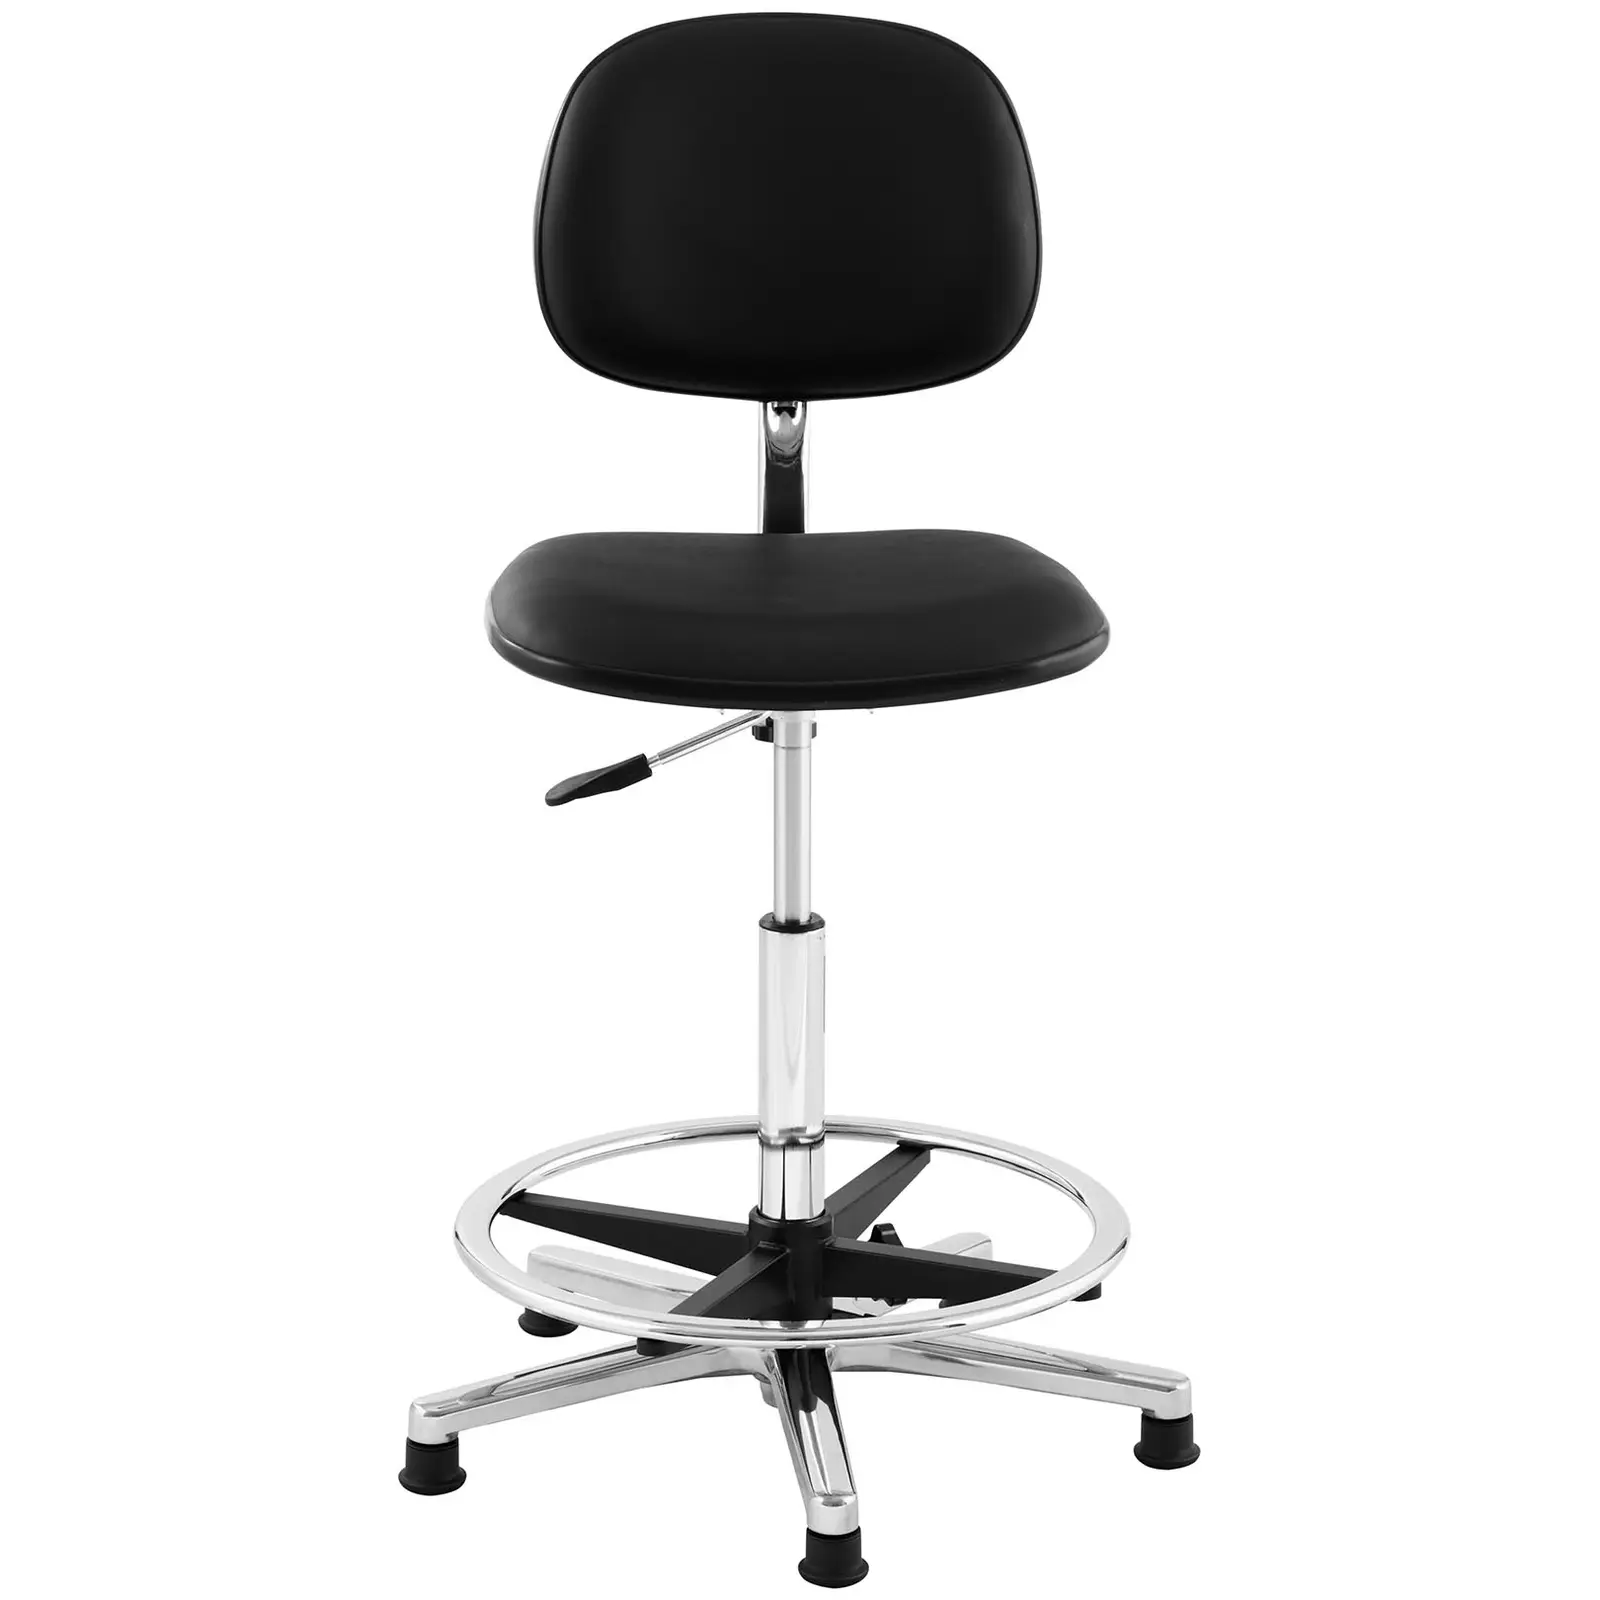 Pracovná stolička - kozmetická - 120 kg - čierna - krúžok na nohy - výškovo nastaviteľná od 530 do 800 mm